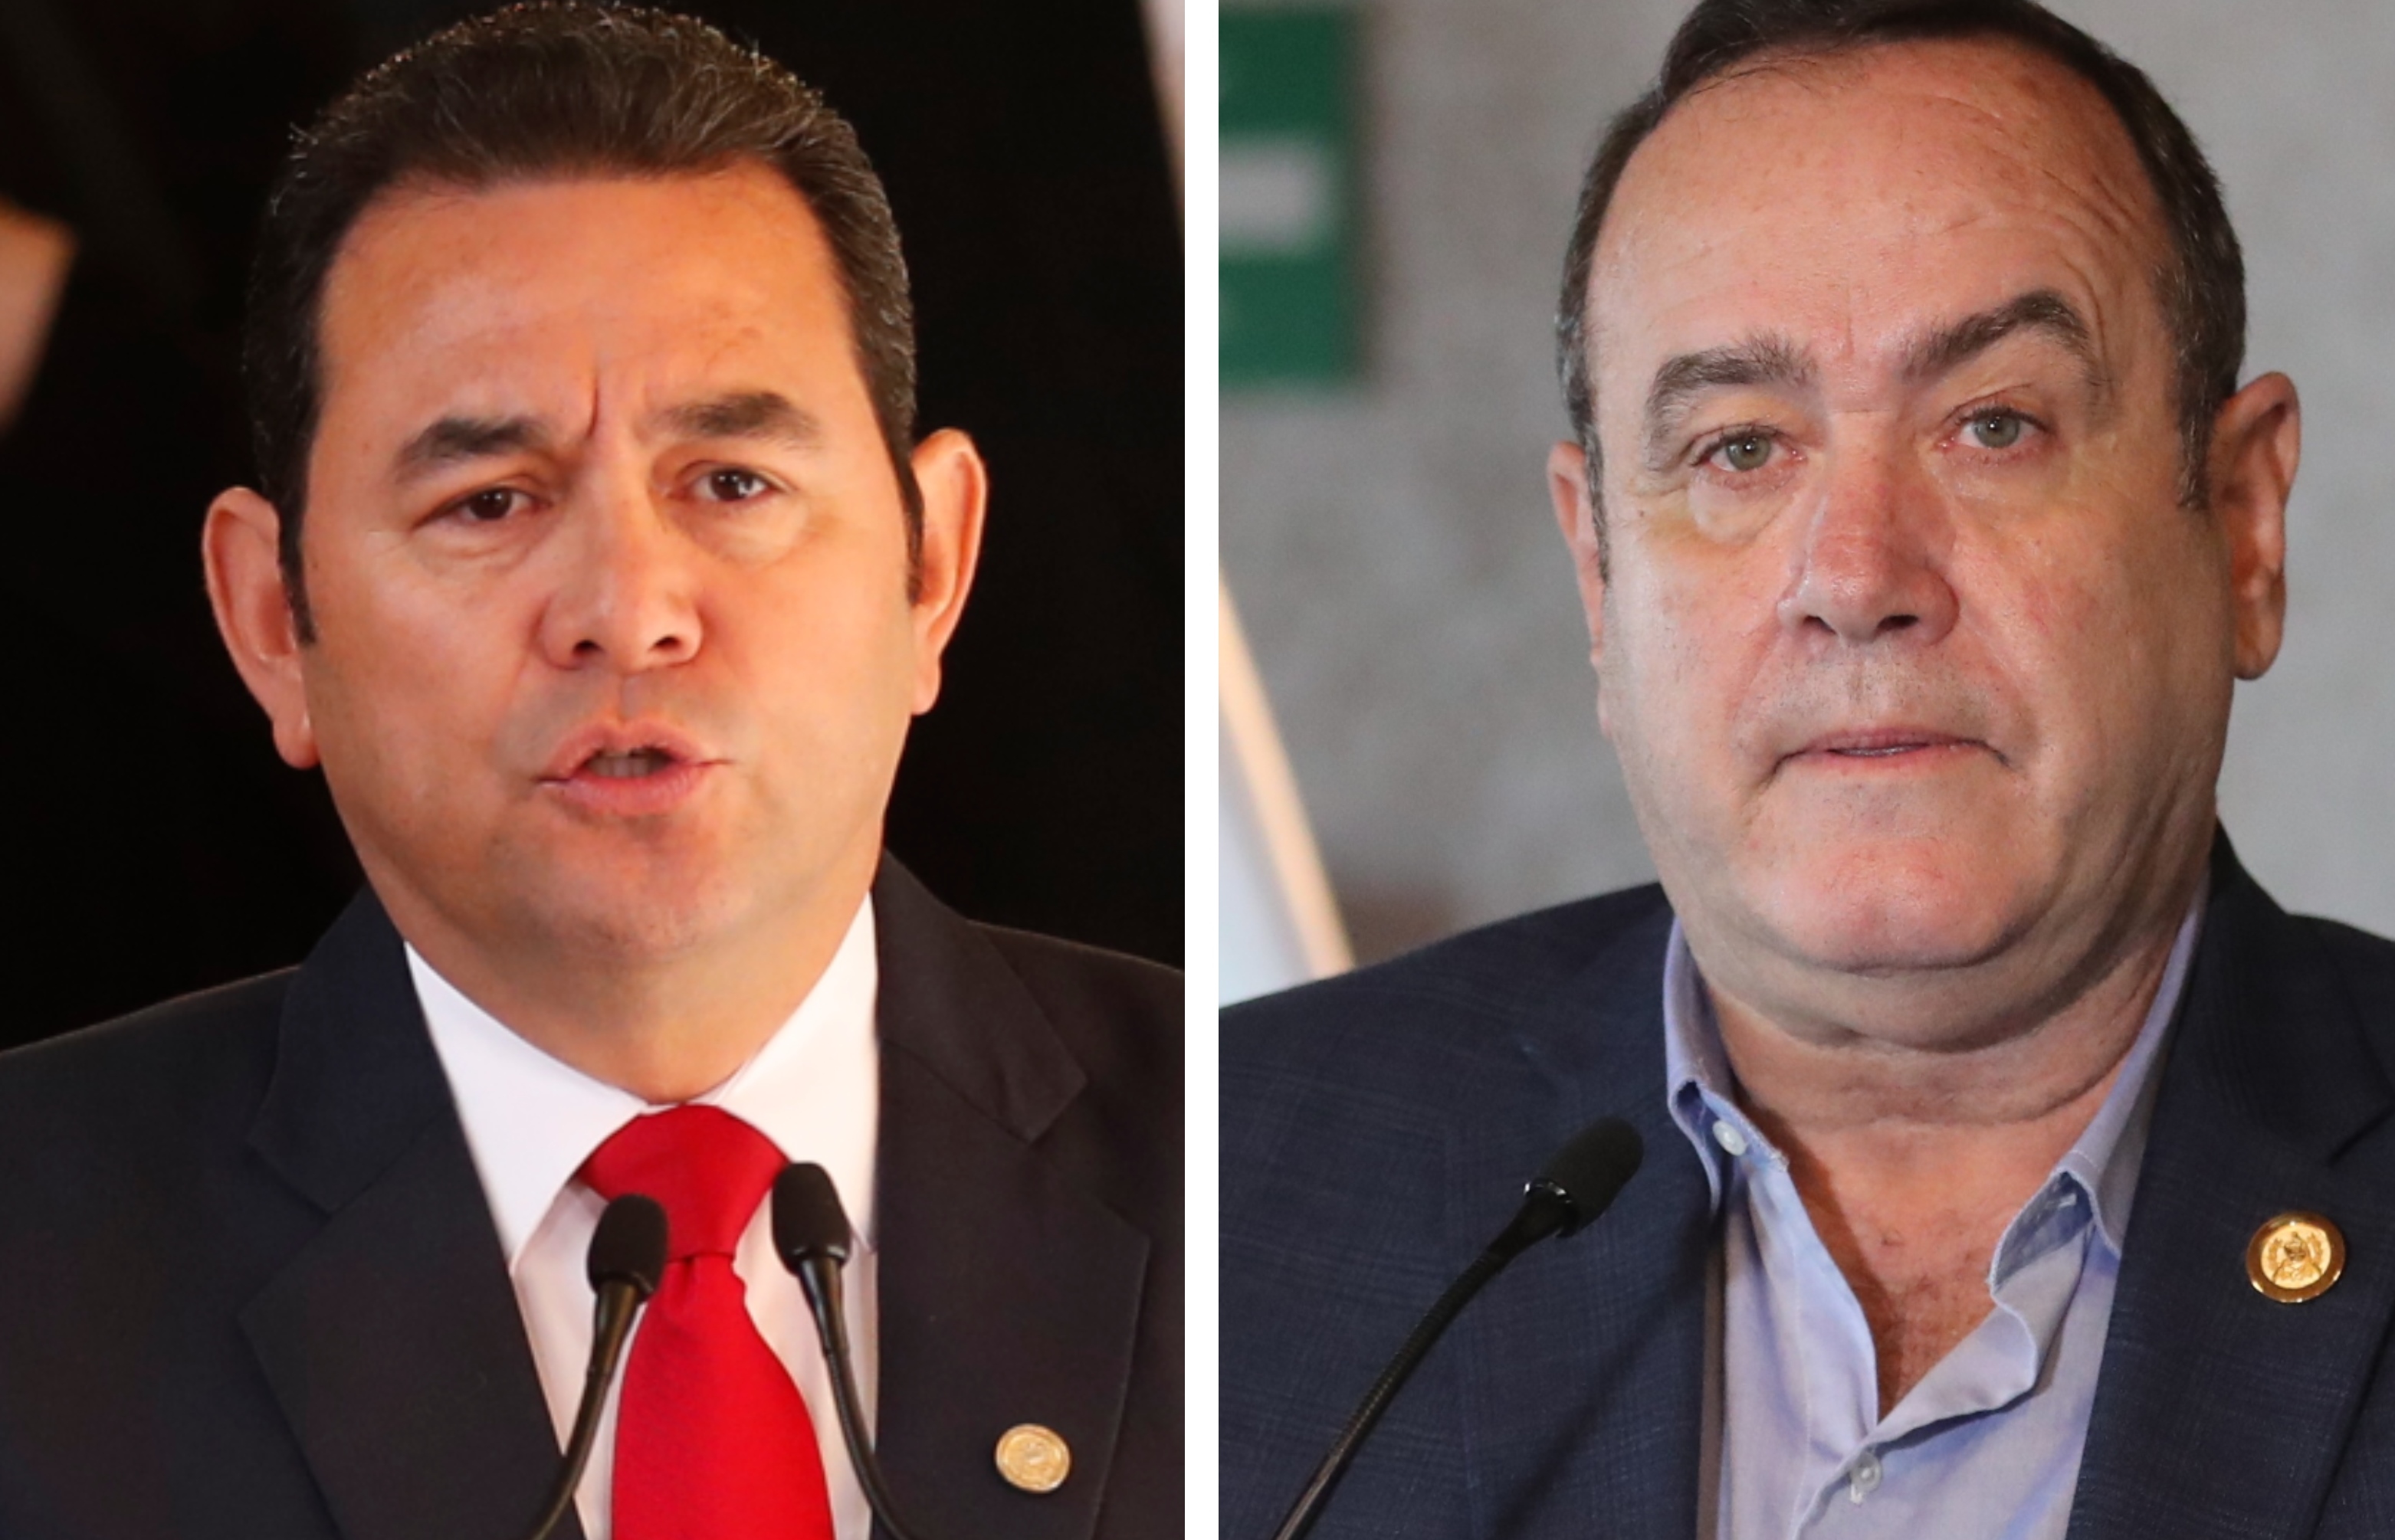 Este 14 de enero comienza la gestión de Alejandro Giammattei, el 51 presidente de Guatemala. (Foto Prensa Libre: Érick Ávila y Esbin García)